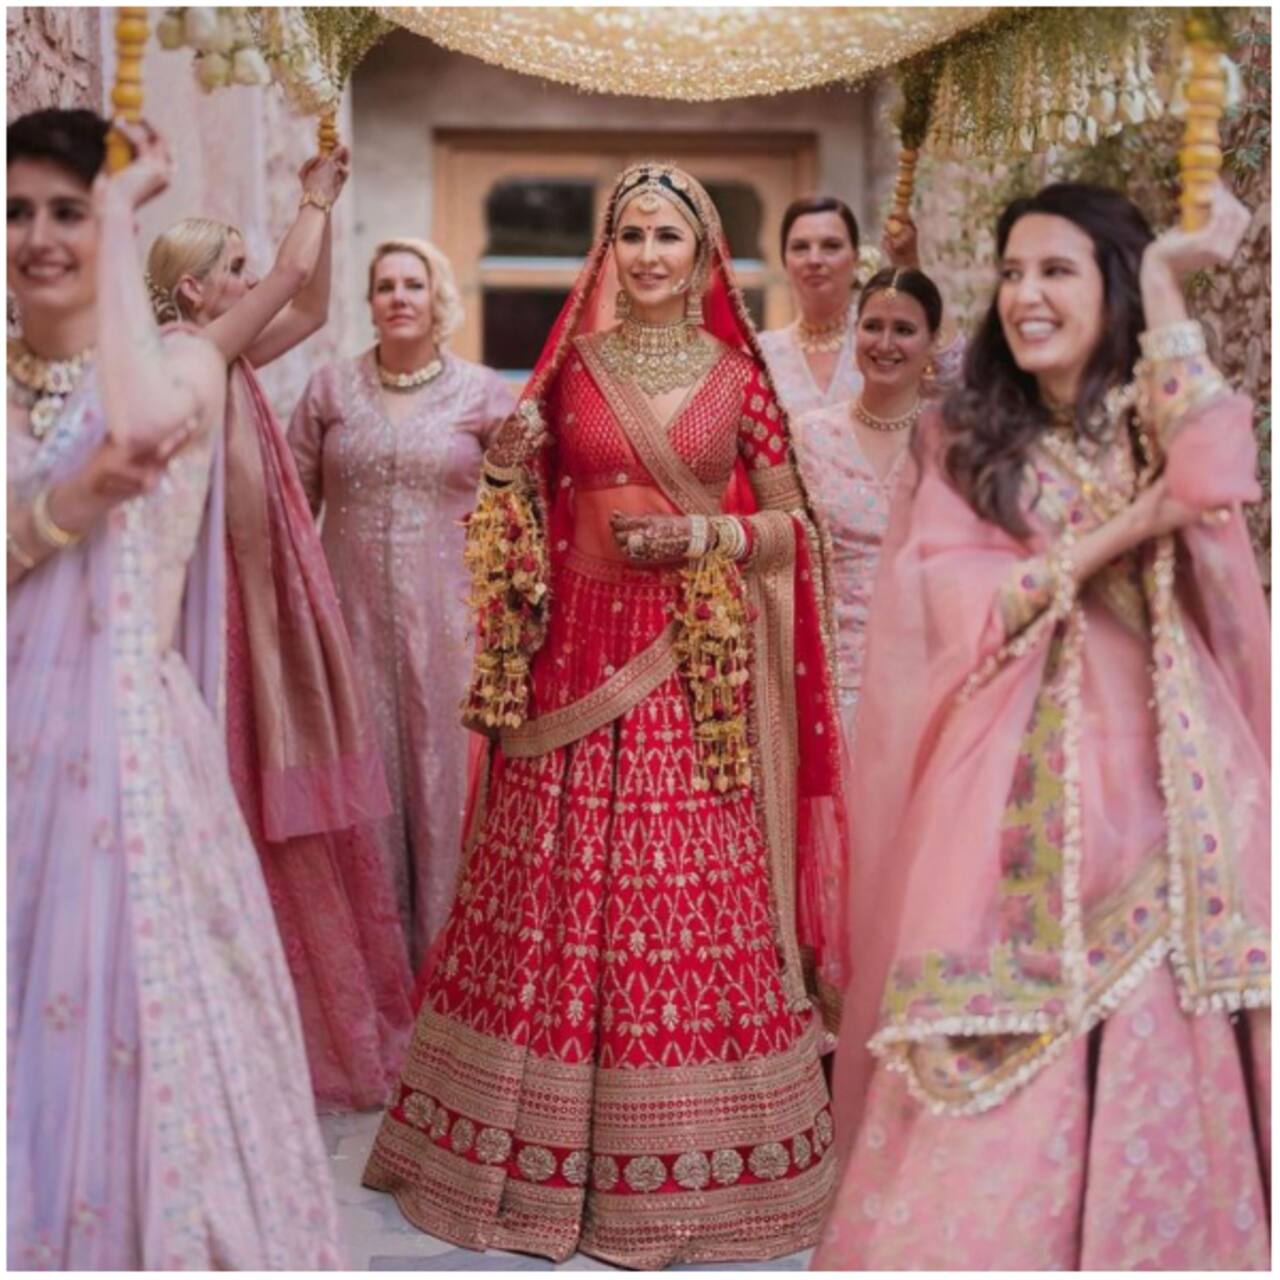 राजस्थान में ही हुई थी कटरीना की शादी